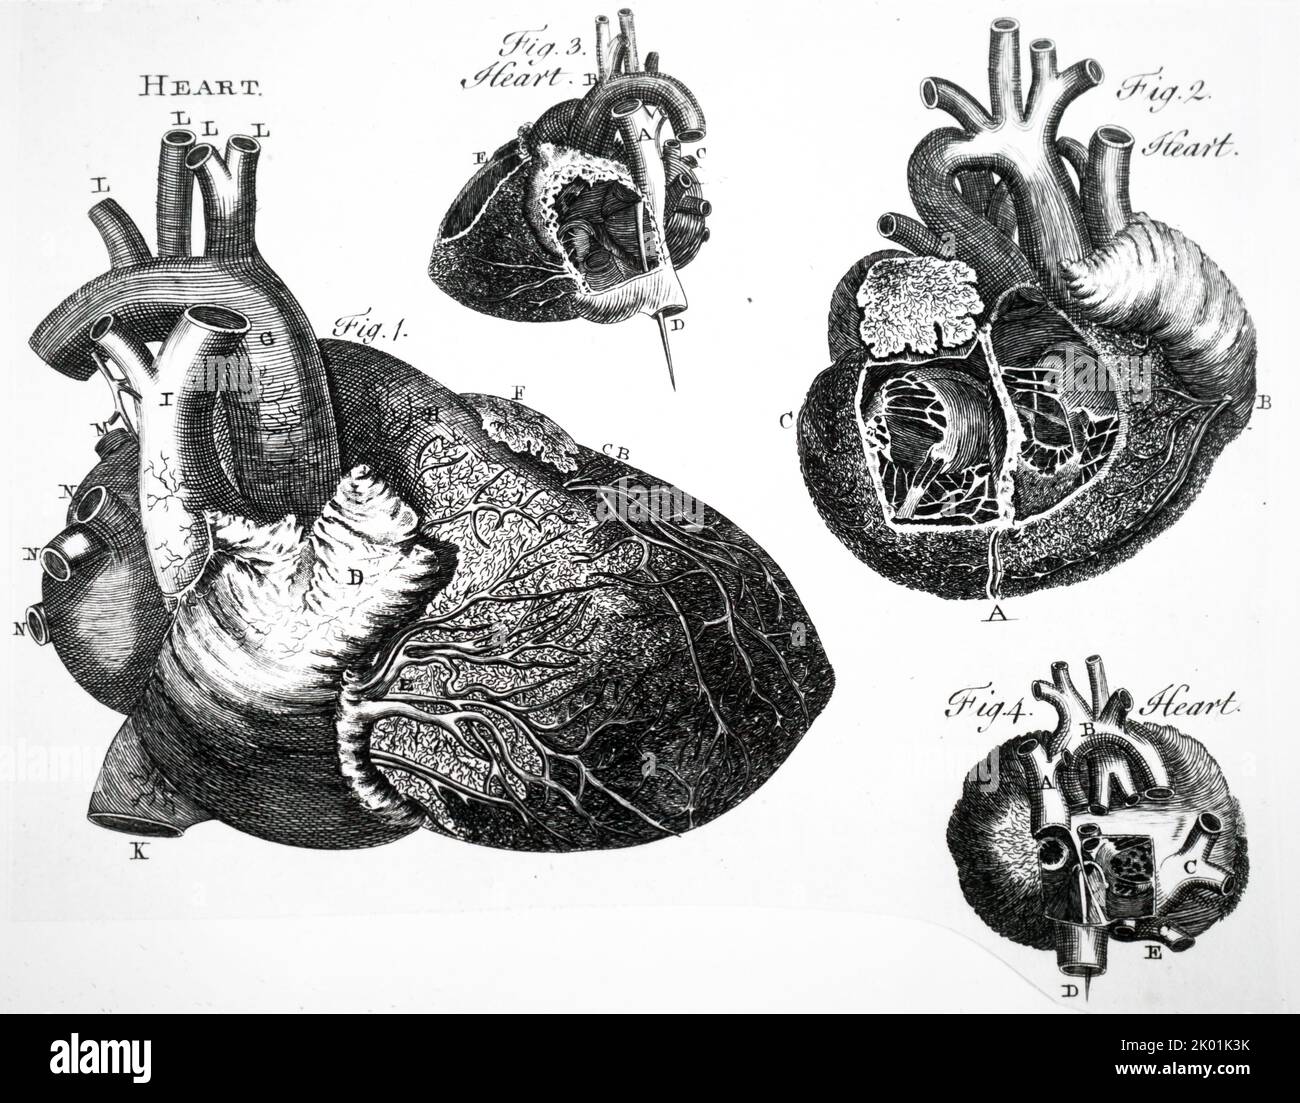 Corazón humano. Del completo Dictionary of Arts and Sciences, Londres, 1764. Foto de stock